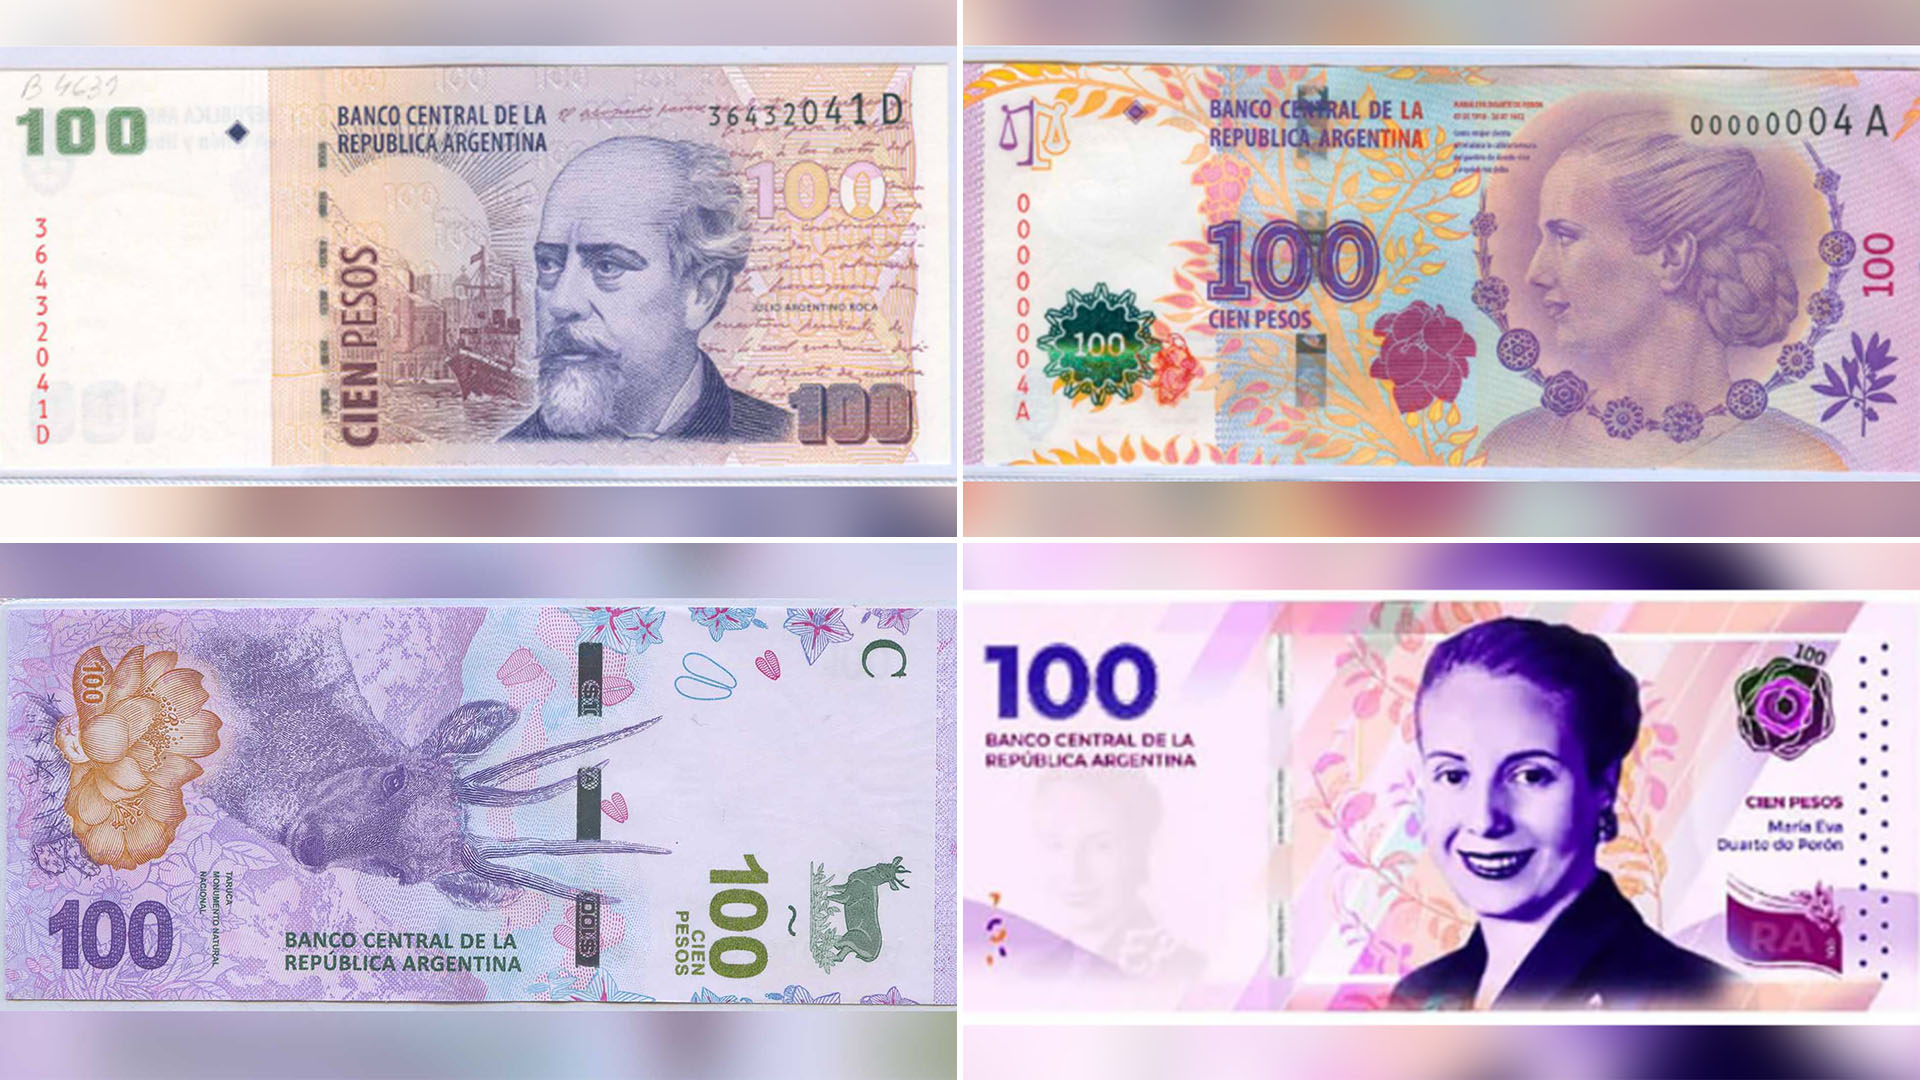 Los cuatro billetes de 100 pesos: acumular tantos de valor tan bajo es tan caro que el Banco Central y los bancos discuten por el costo de atesorarlos